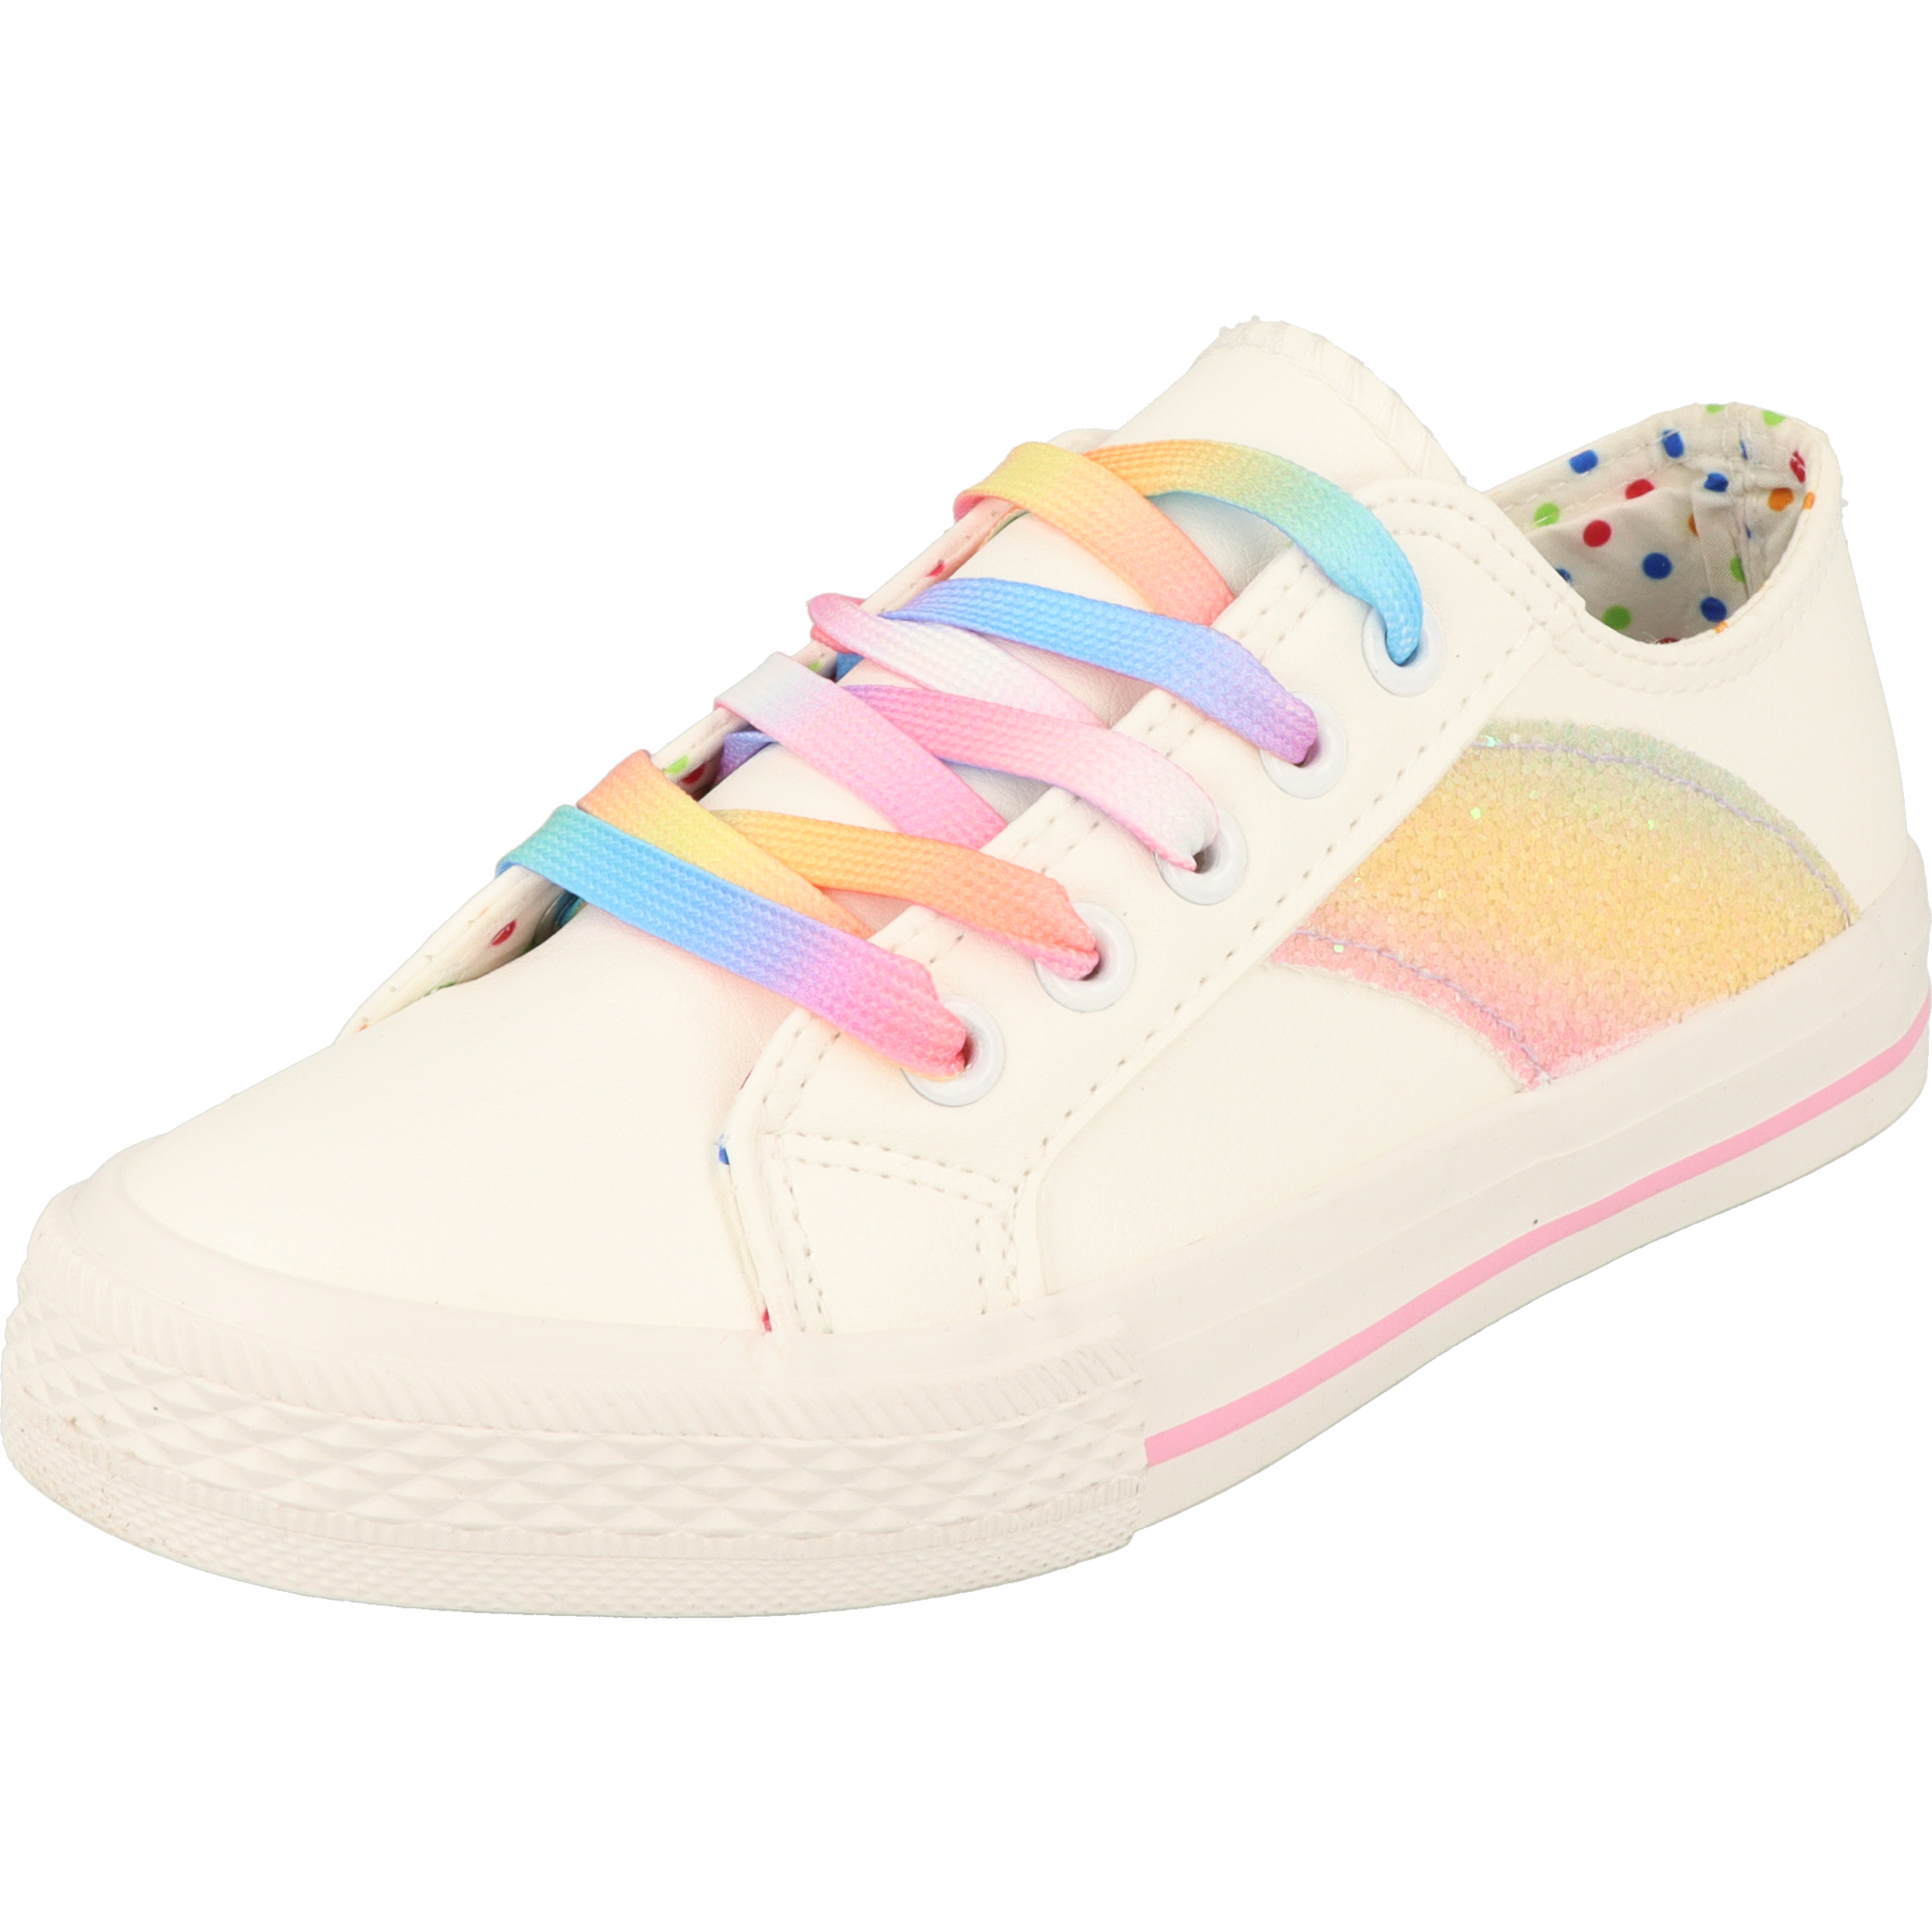 Indigo Mädchen 432-177 Schuhe Halbschuhe Sneaker Glitzer Rainbow Weiss